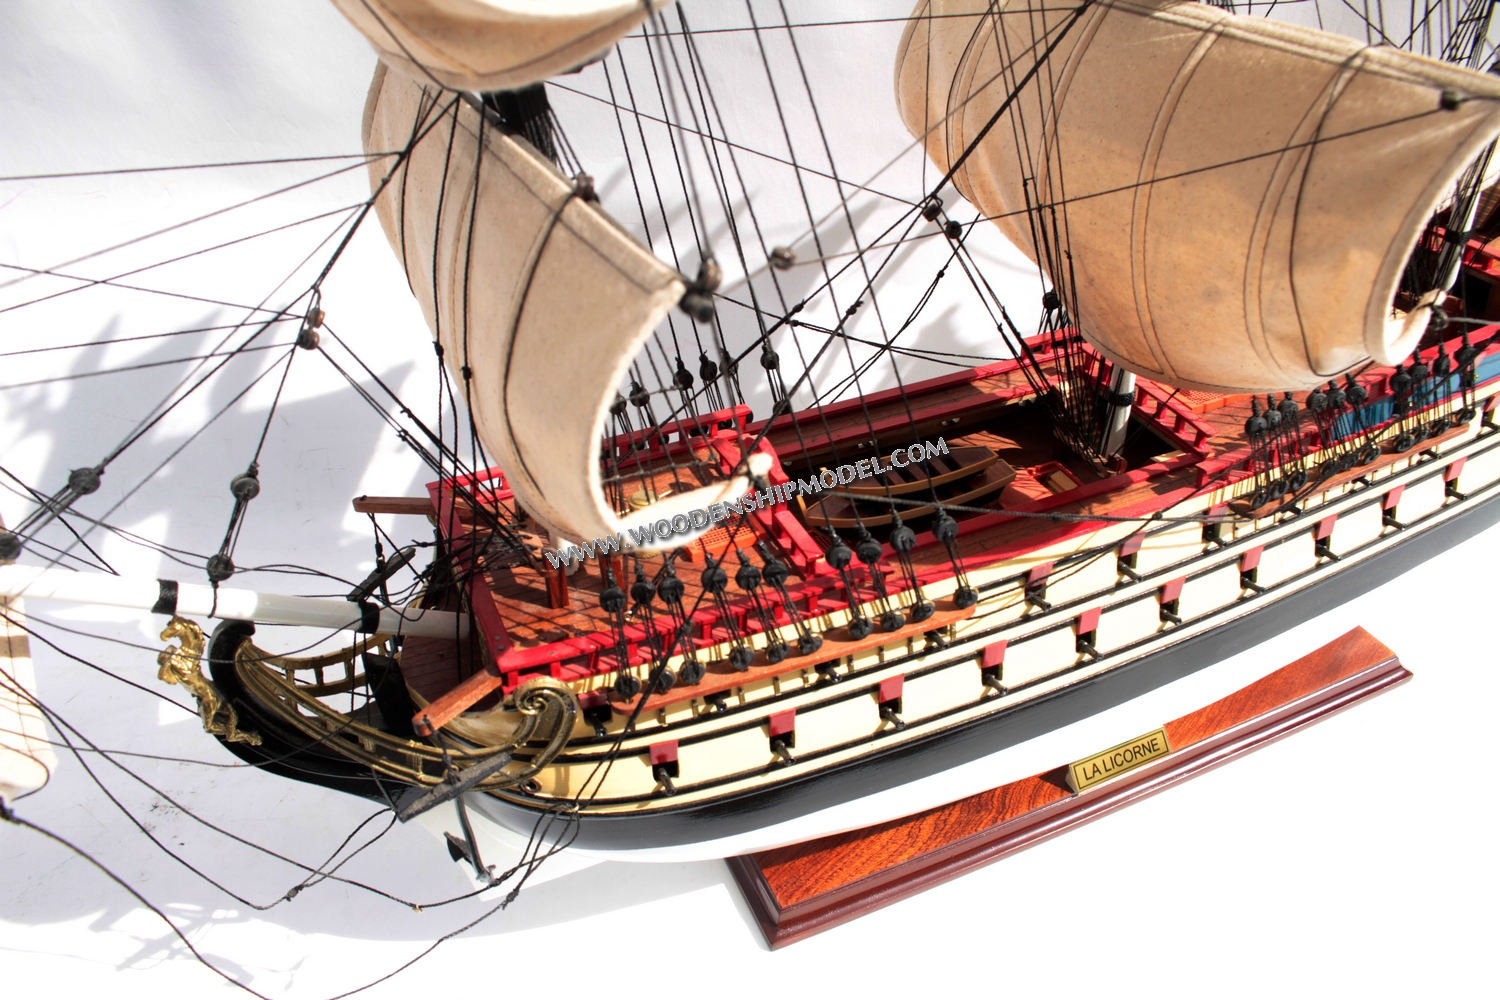 The Unicorn ship model, La Licorne wooden model historic ship, La licorne ship in Tintin movie, La licorne ship model, La licorne bateau model, Ship model la licorne, Display ship model La Licorne Unicorn, La Licorn